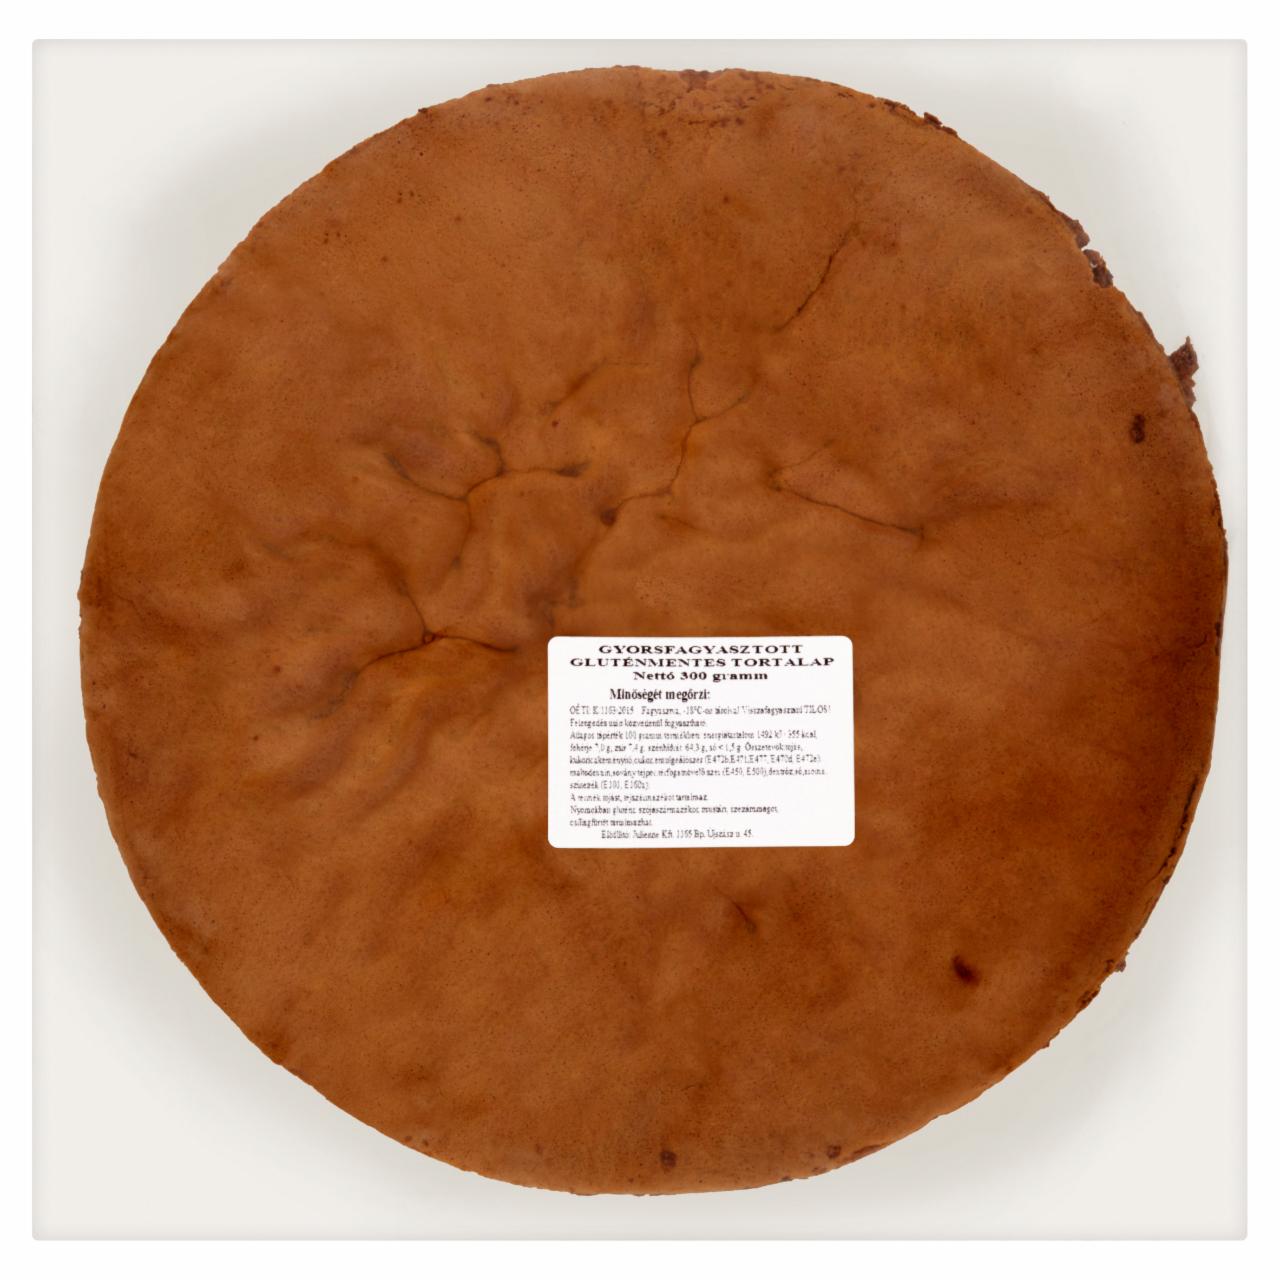 Képek - Gyorsfagyasztott gluténmentes tortalap 300 g